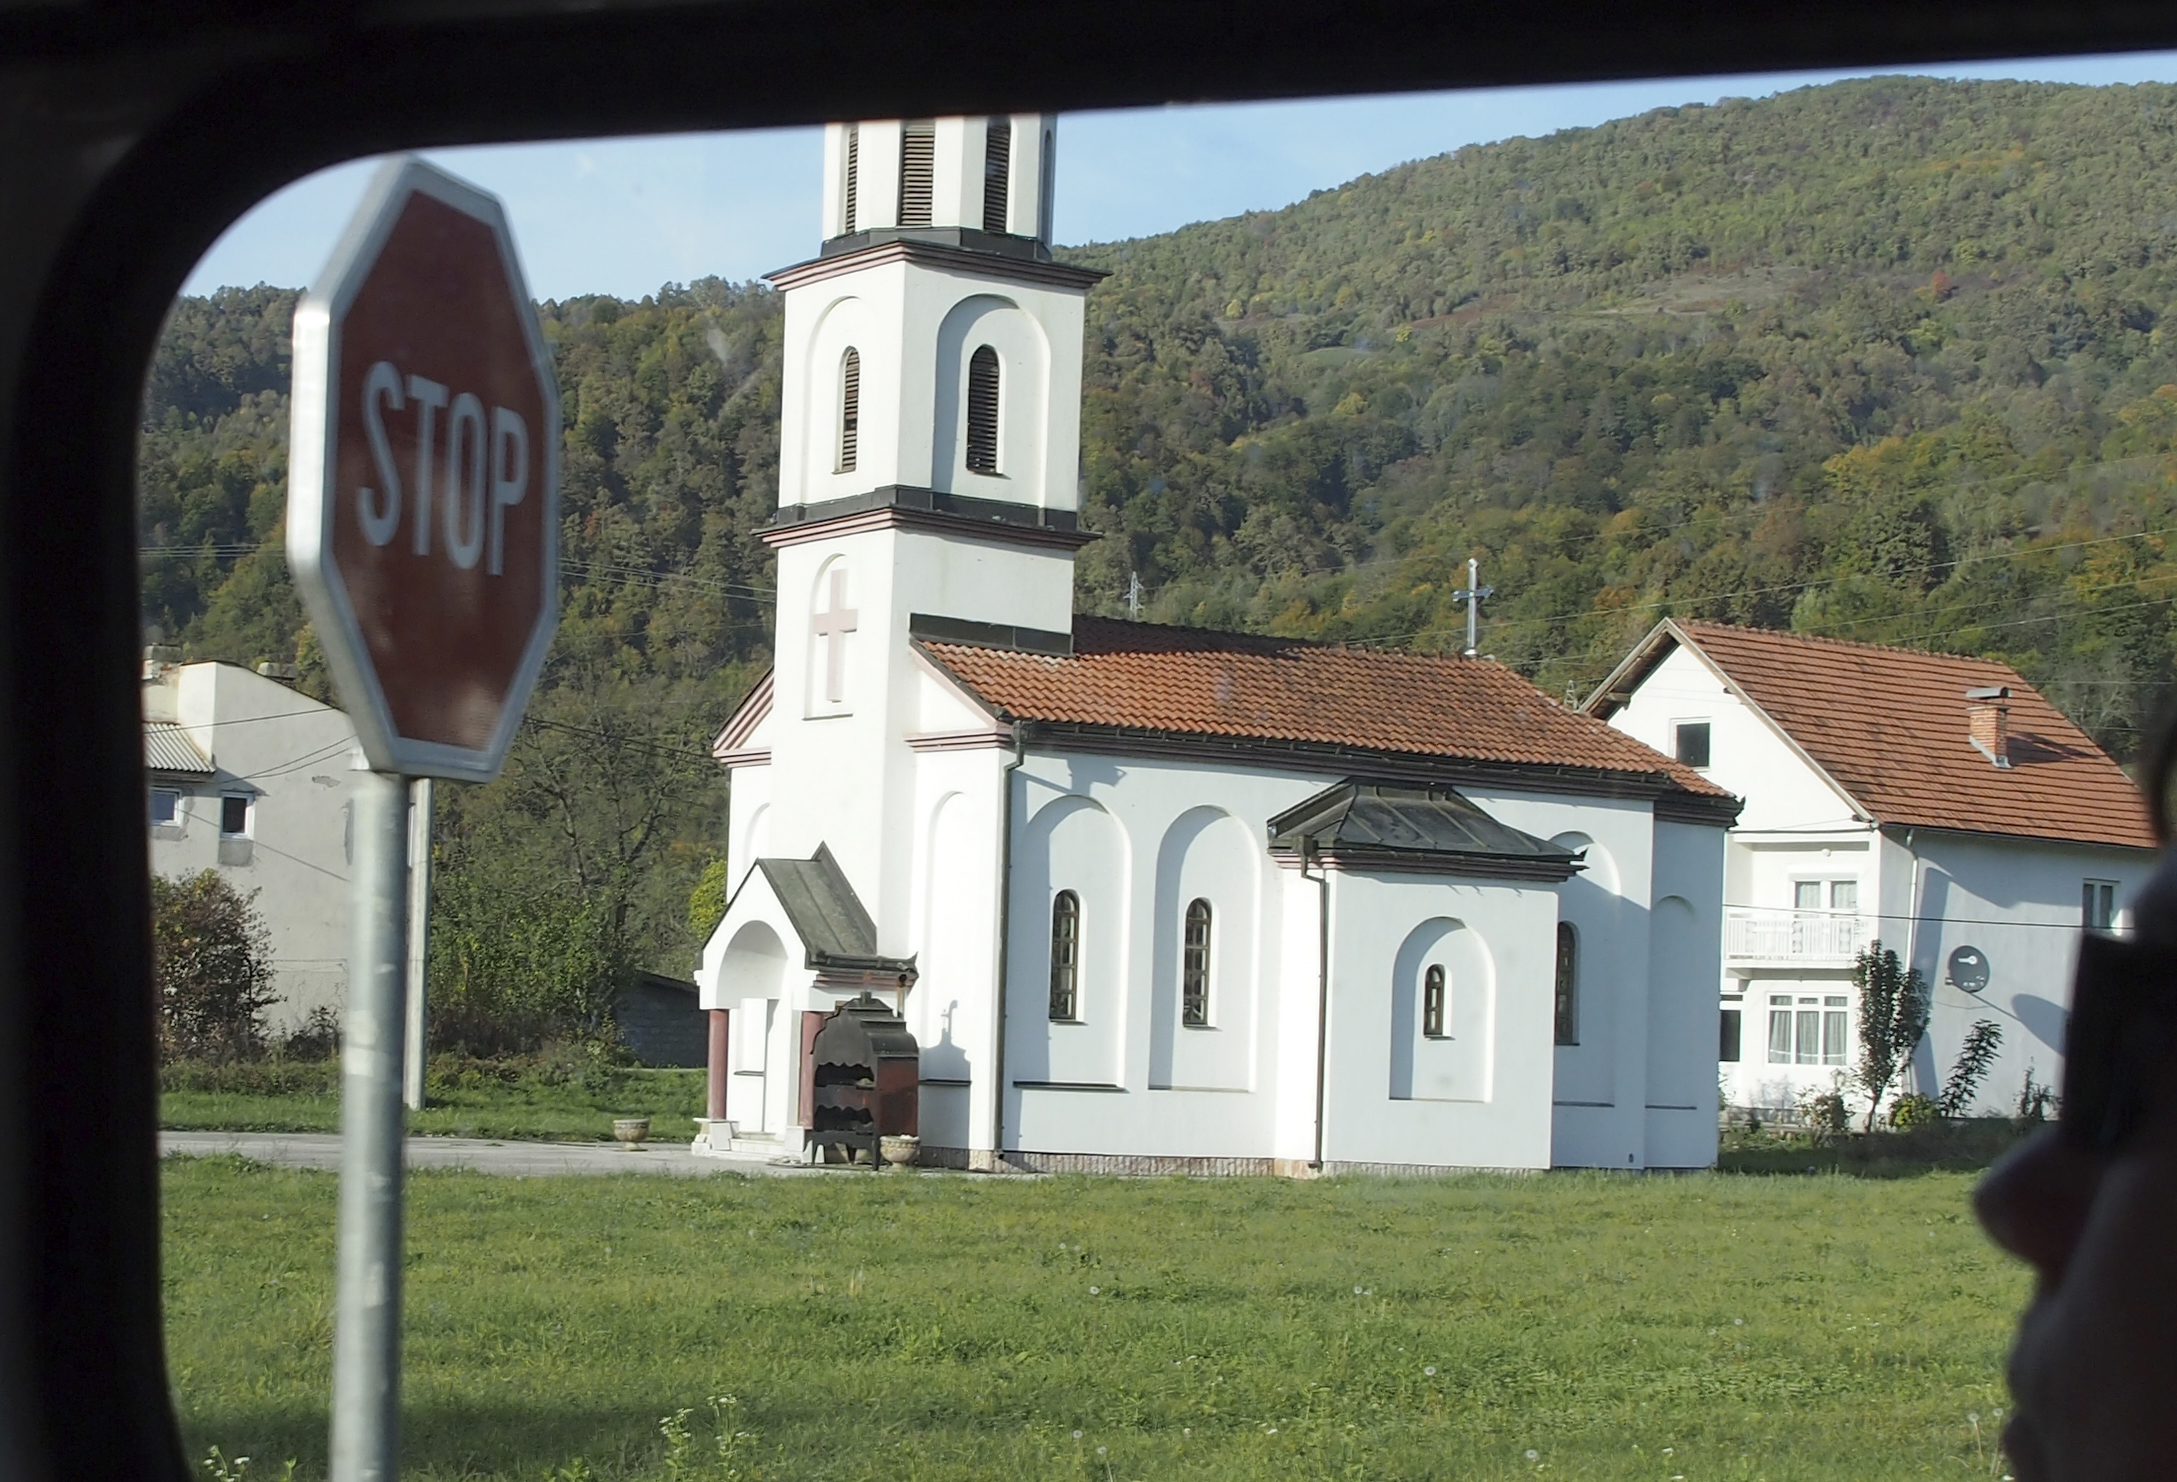 Srebrenicassa kirkko on määrätty siirrettäväksi